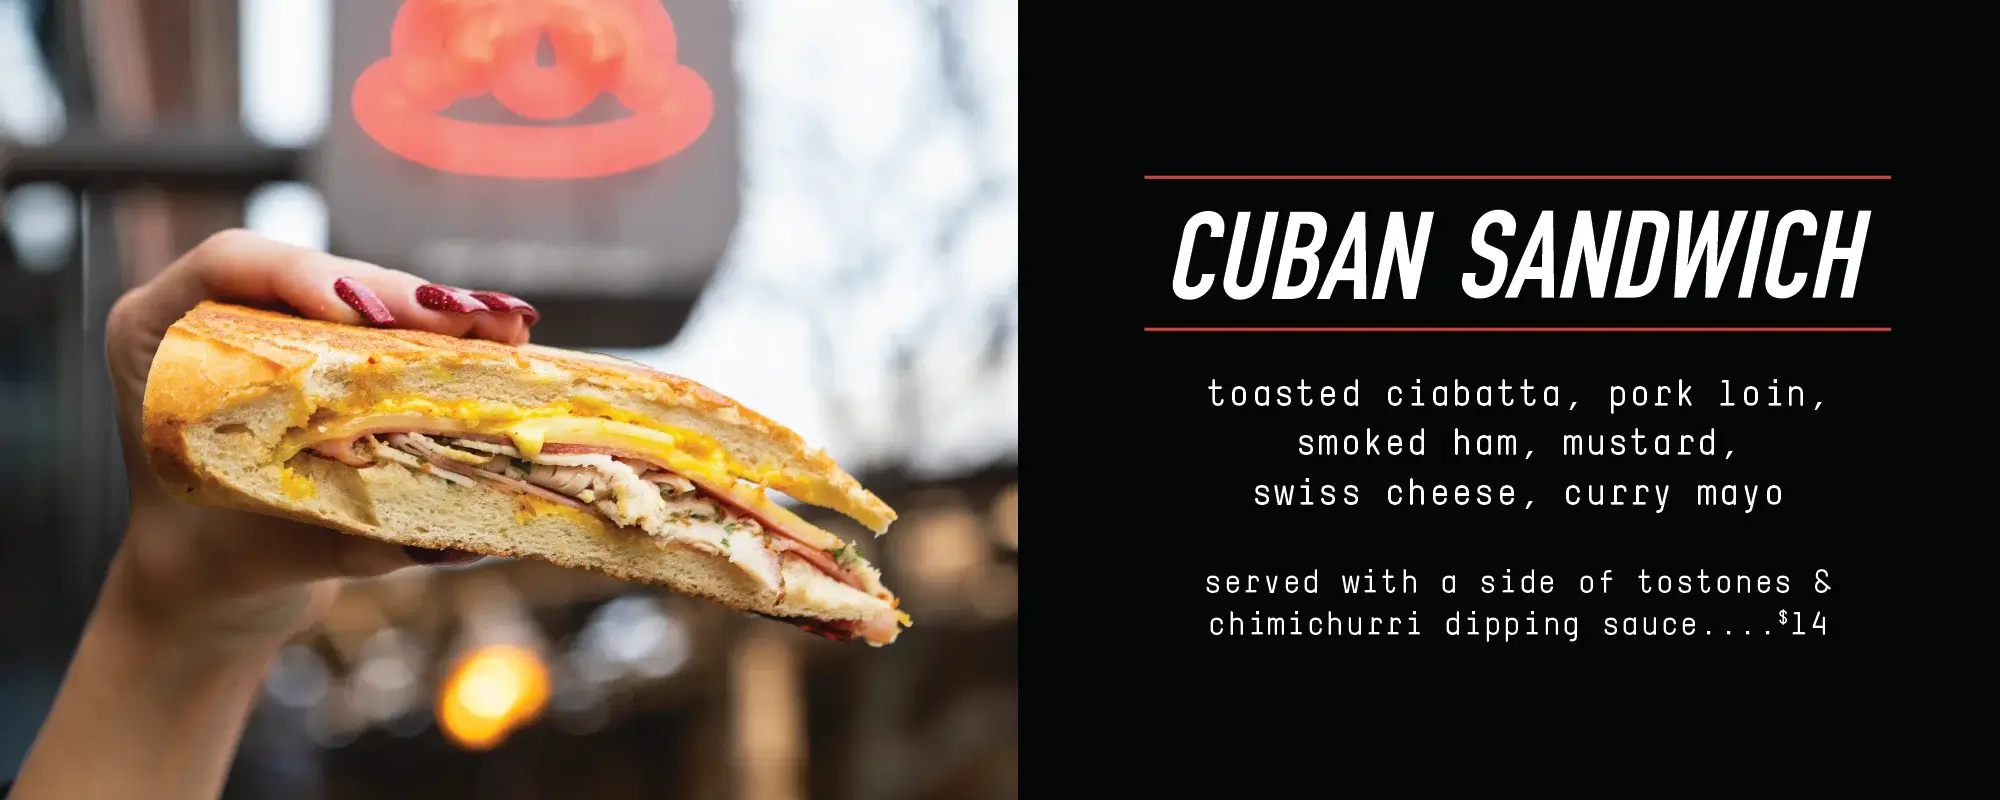 cuban sandwich - Desktop